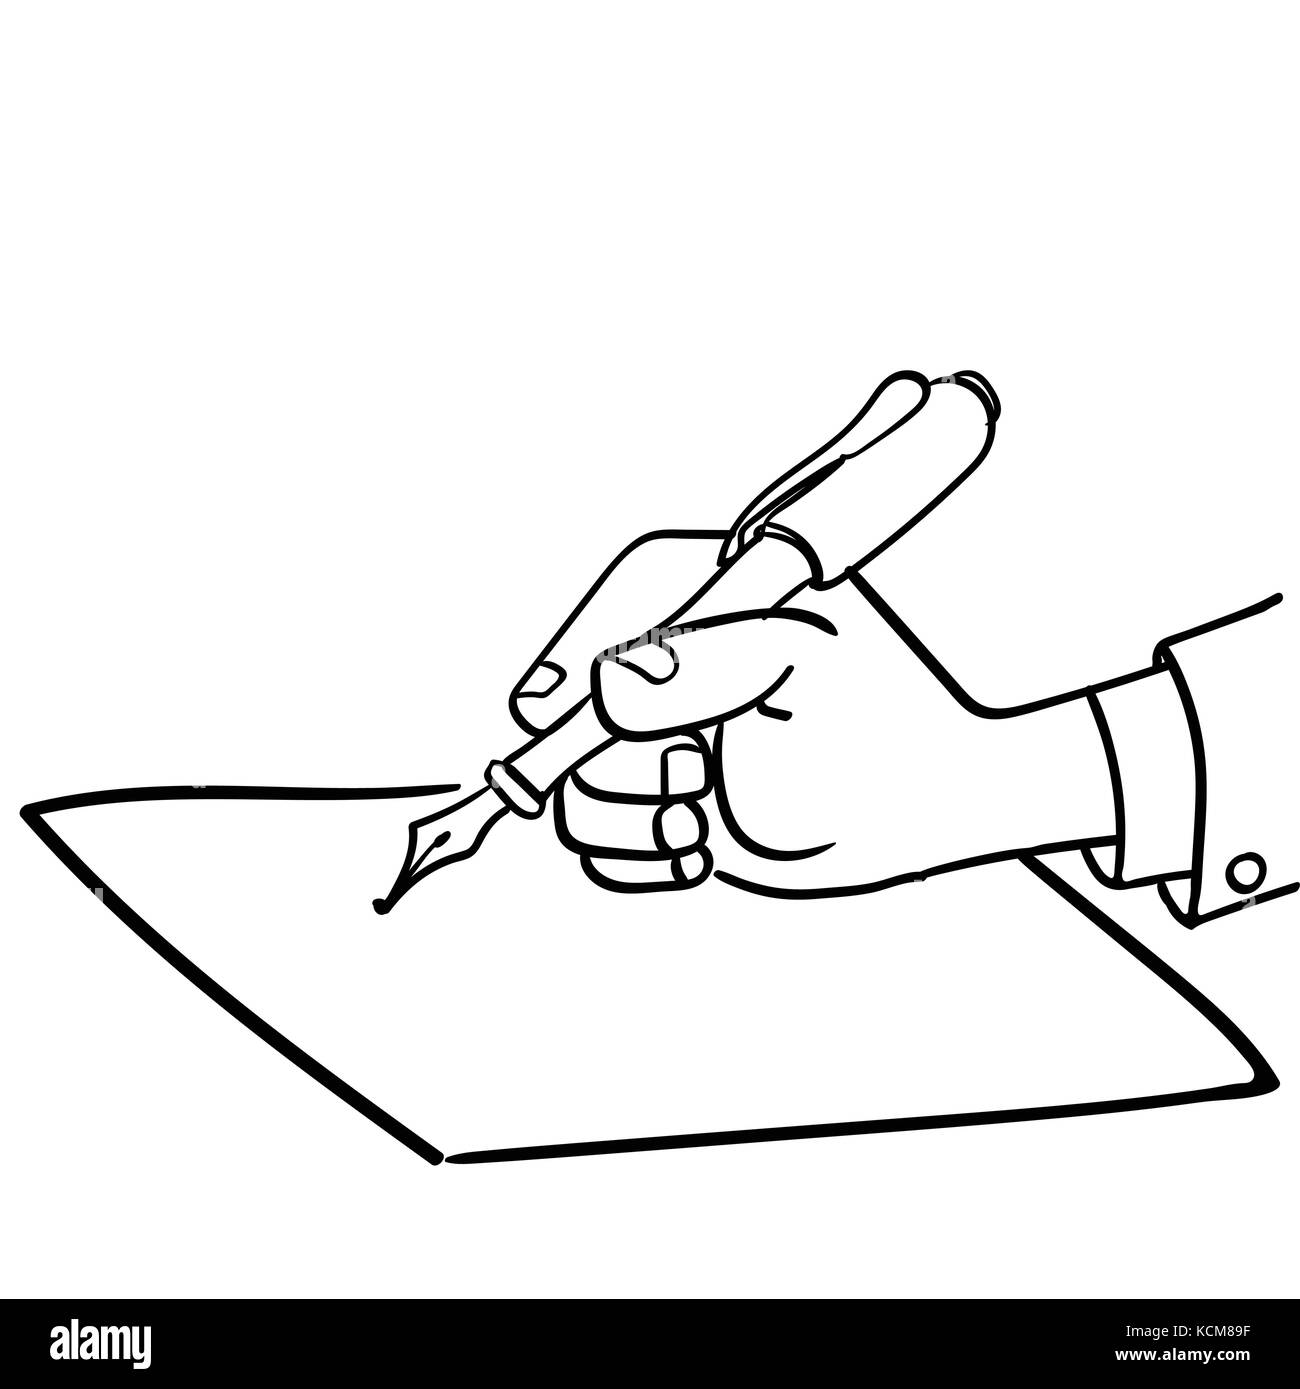 Cartoon imprenditore scrivere con una penna in mano, close-up di una scrittura a mano su carta-disegnati a mano illustrazione vettoriale. Illustrazione Vettoriale